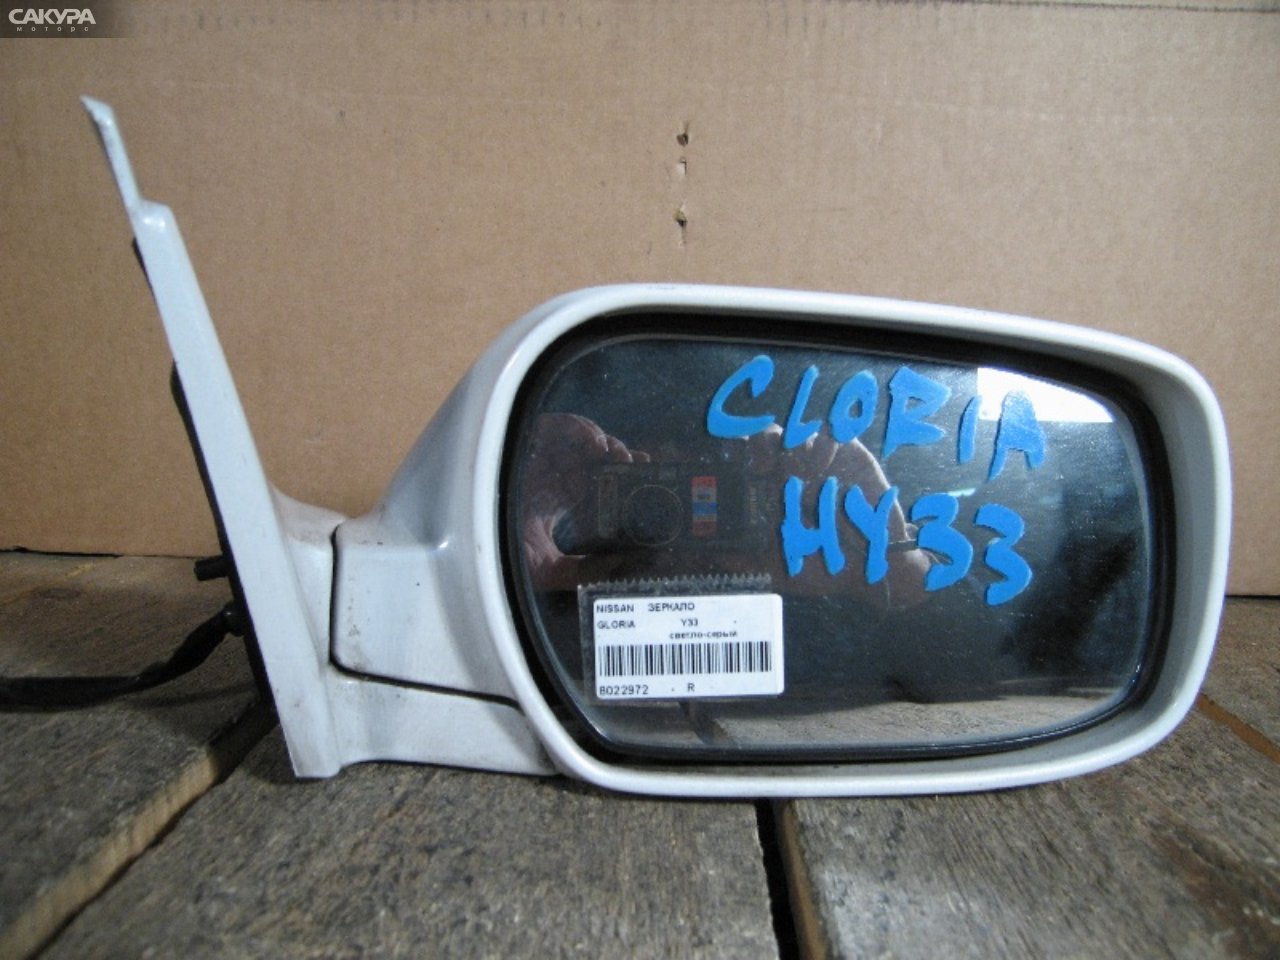 Зеркало боковое правое Nissan Gloria Y33: купить в Сакура Абакан.